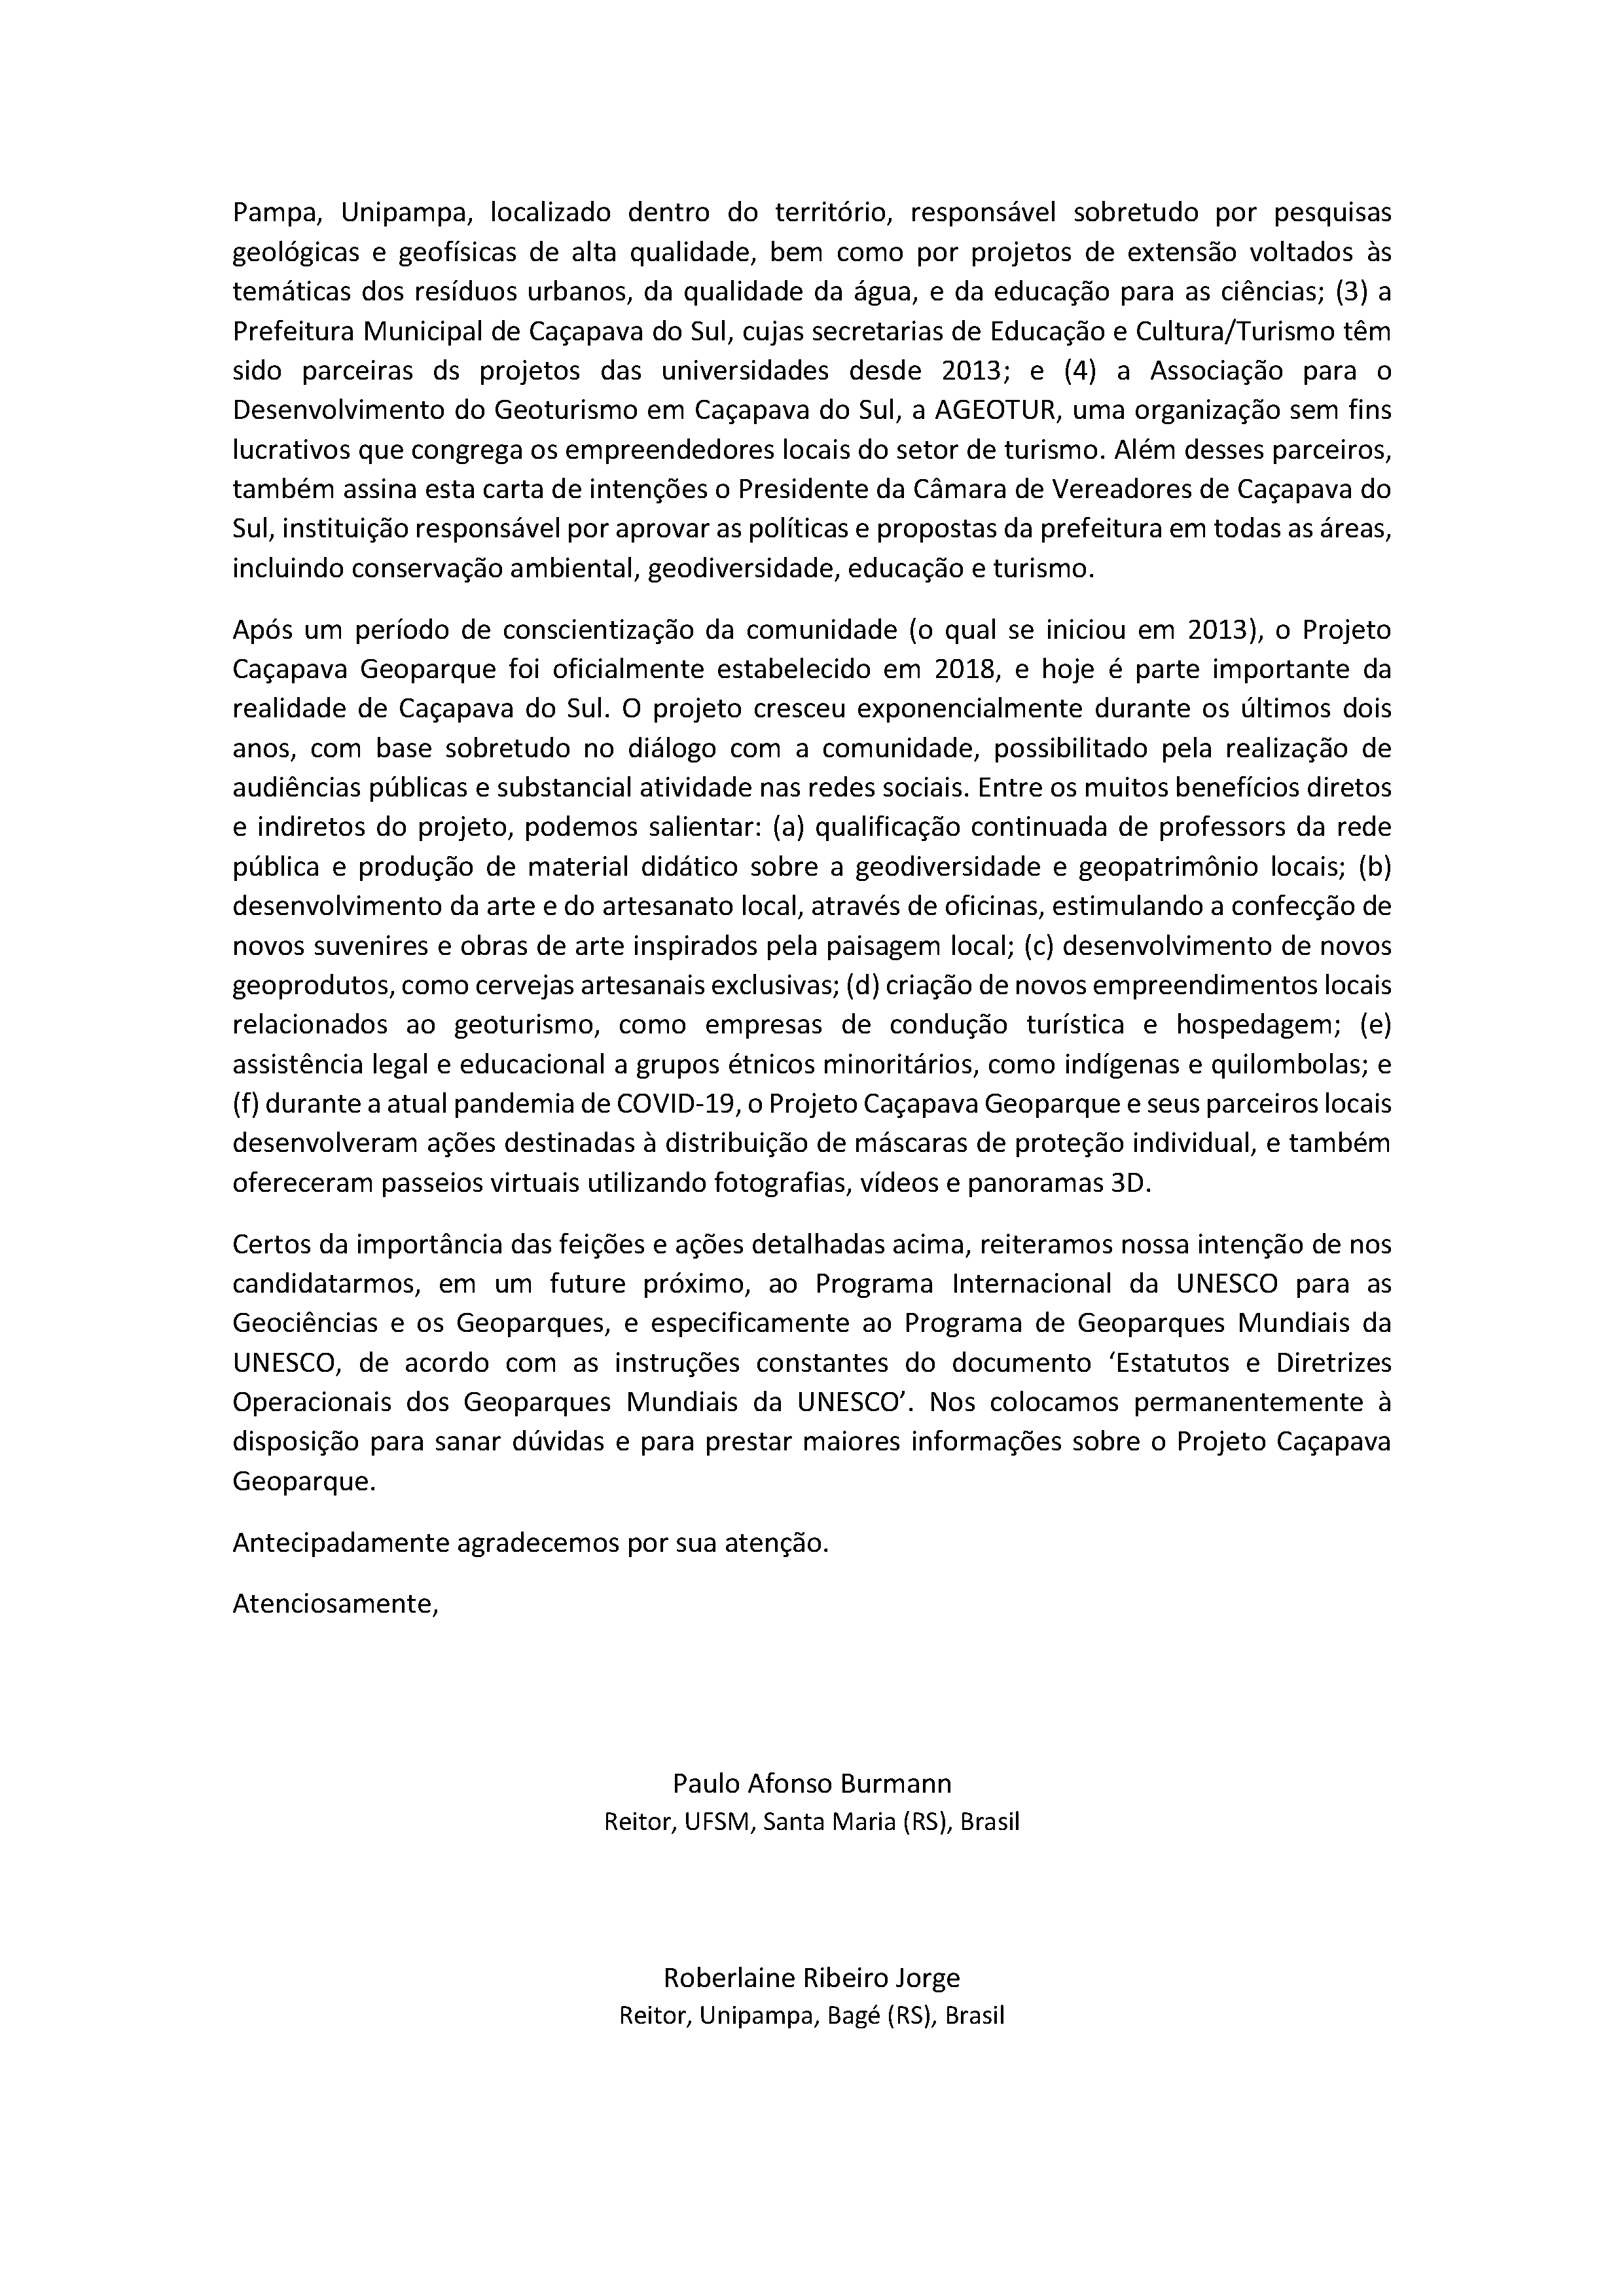 Segunda página da carta de intenções apresentada à Unesco.